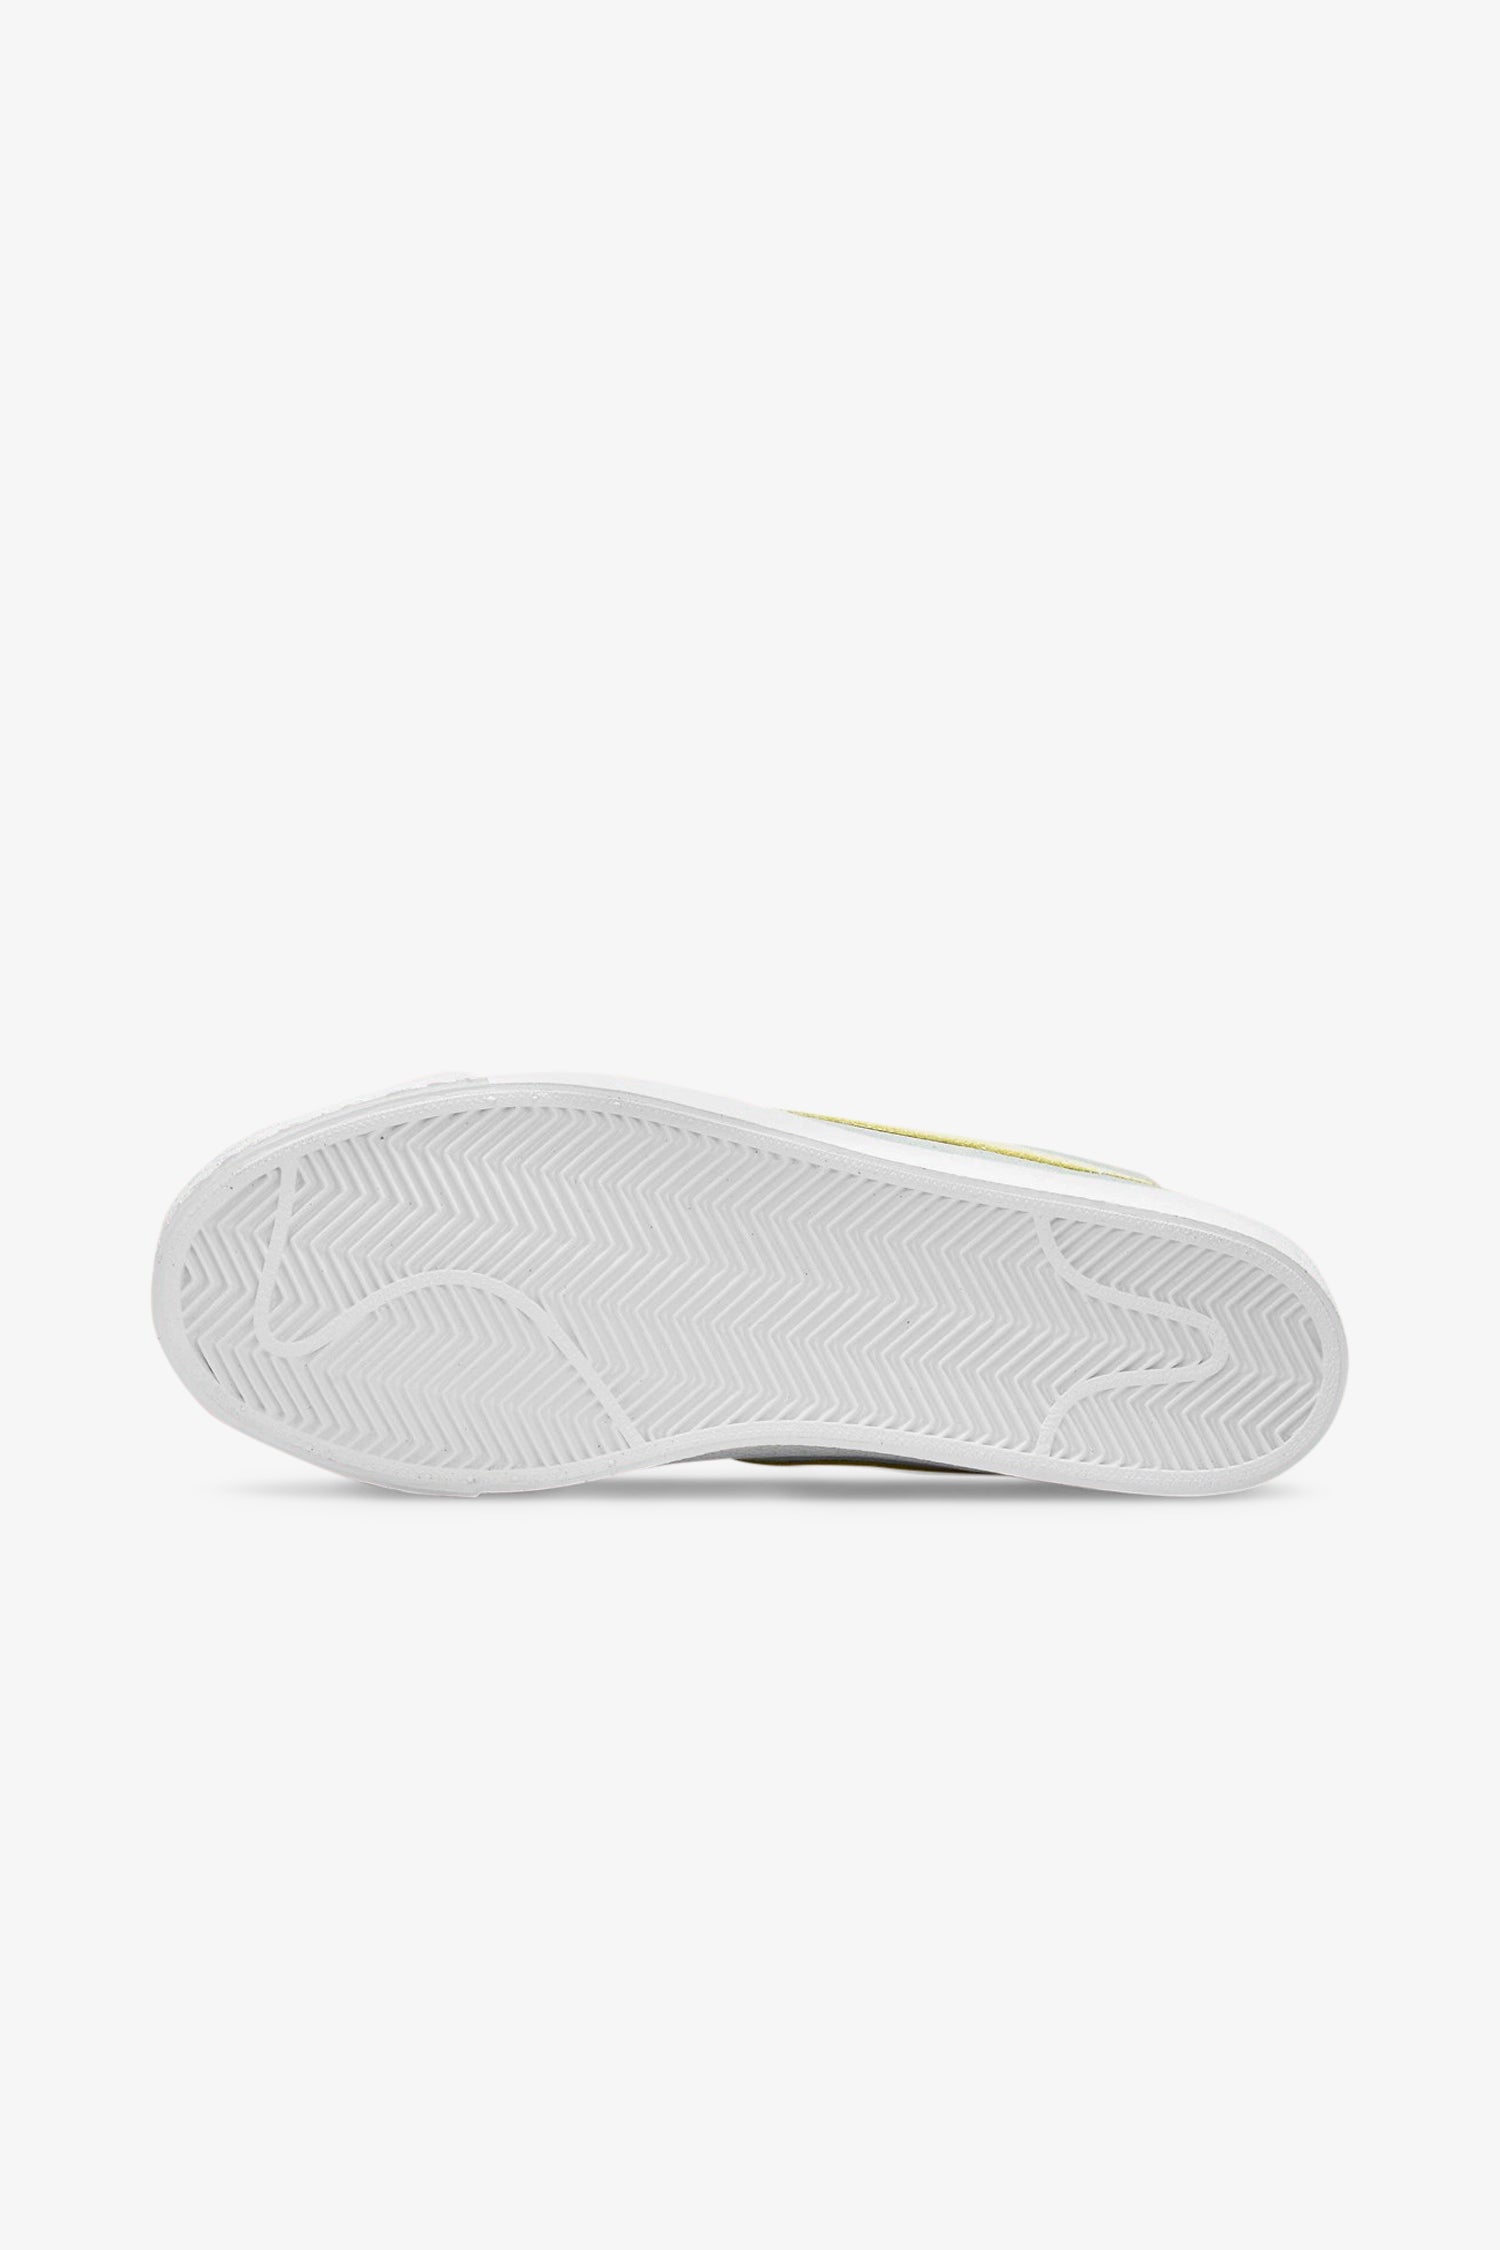 Selectshop FRAME - NIKE SB Blazer Mid PRM "Faded Light Dew" footwear Dubai